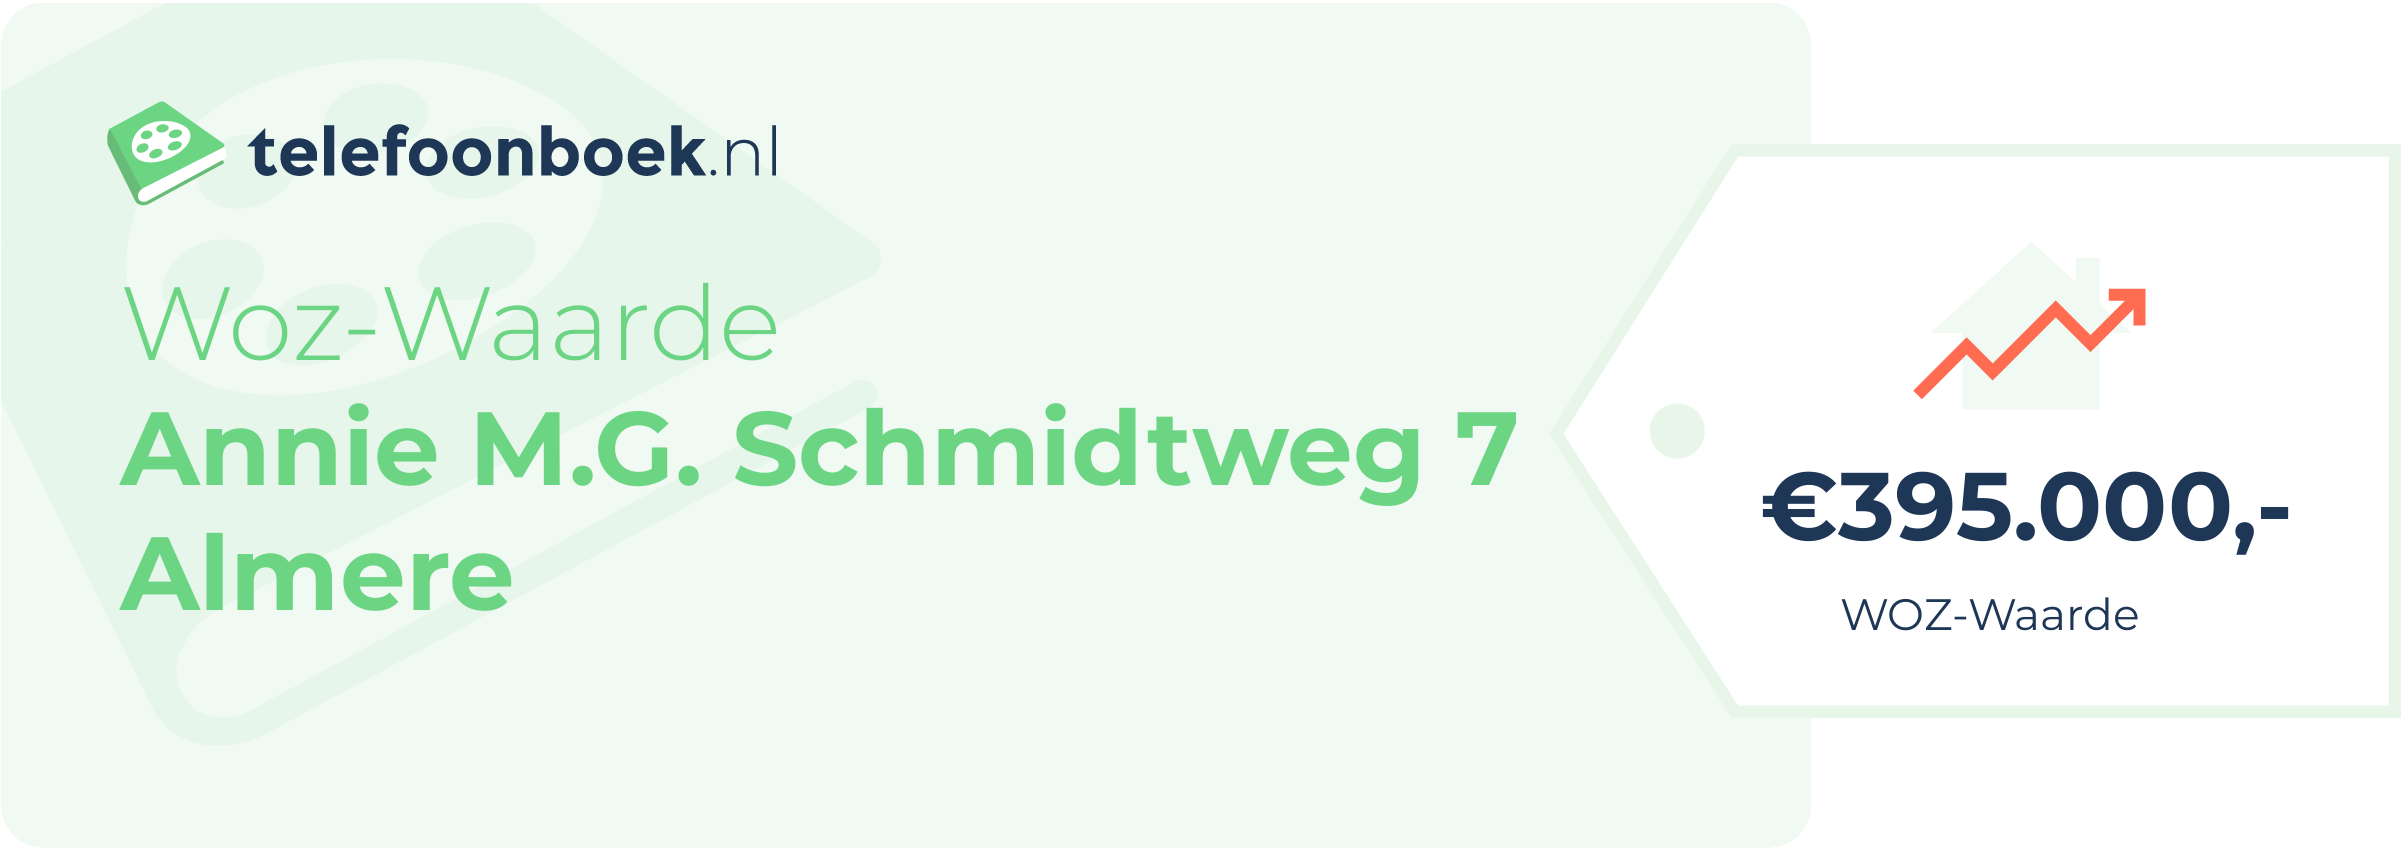 WOZ-waarde Annie M.G. Schmidtweg 7 Almere